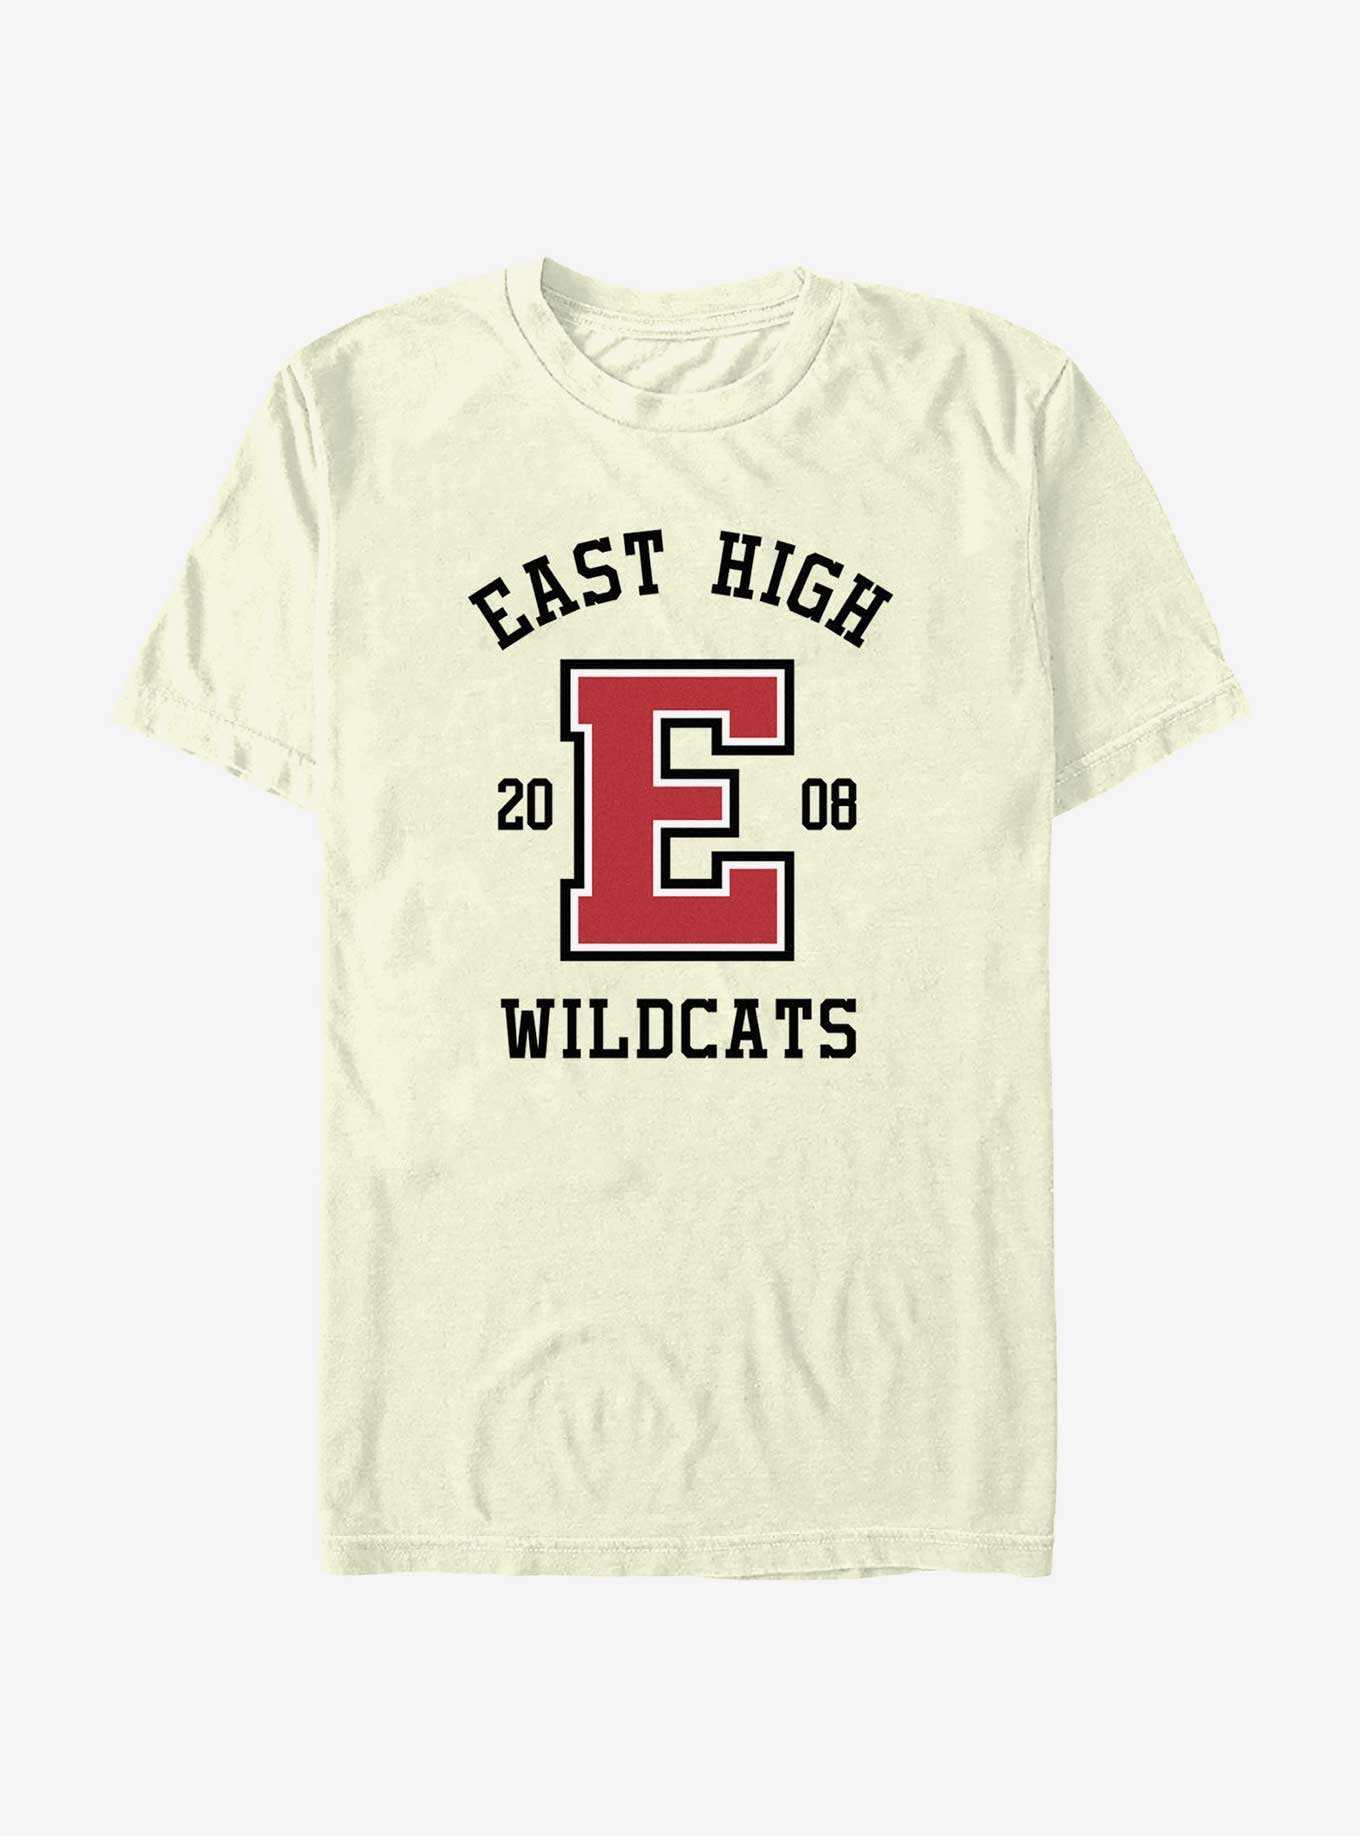 High School Musical East High Wildcats 2008 T-Shirt, , hi-res